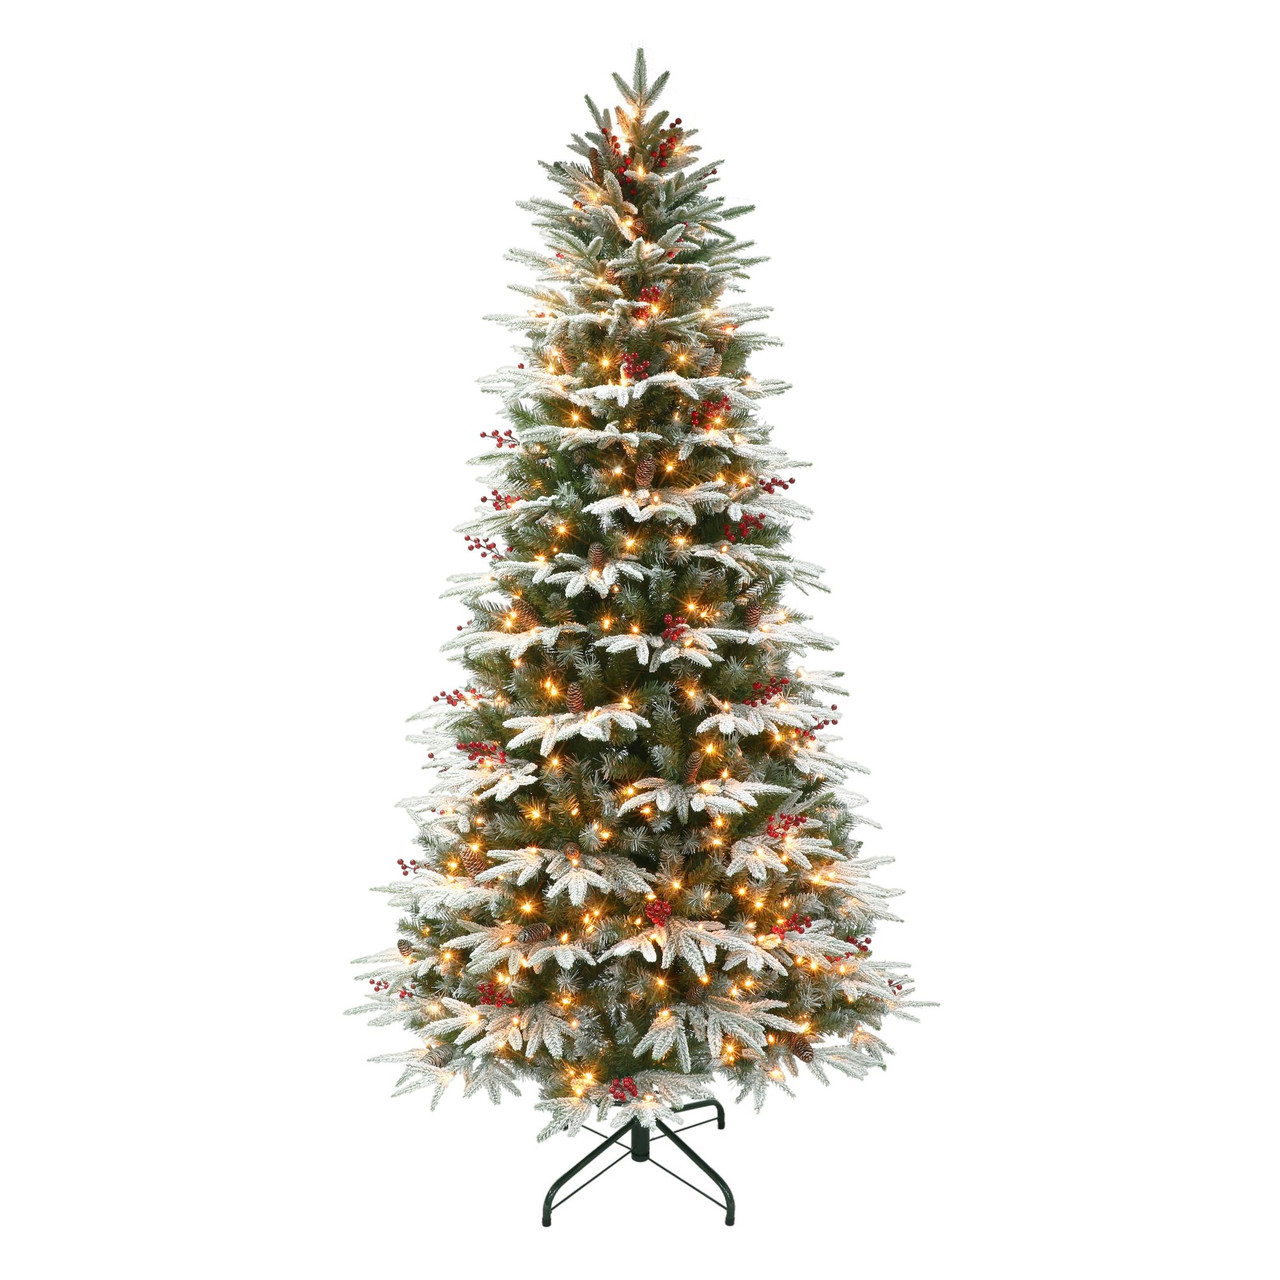 Elegant Christmas Tree with Pine Cones